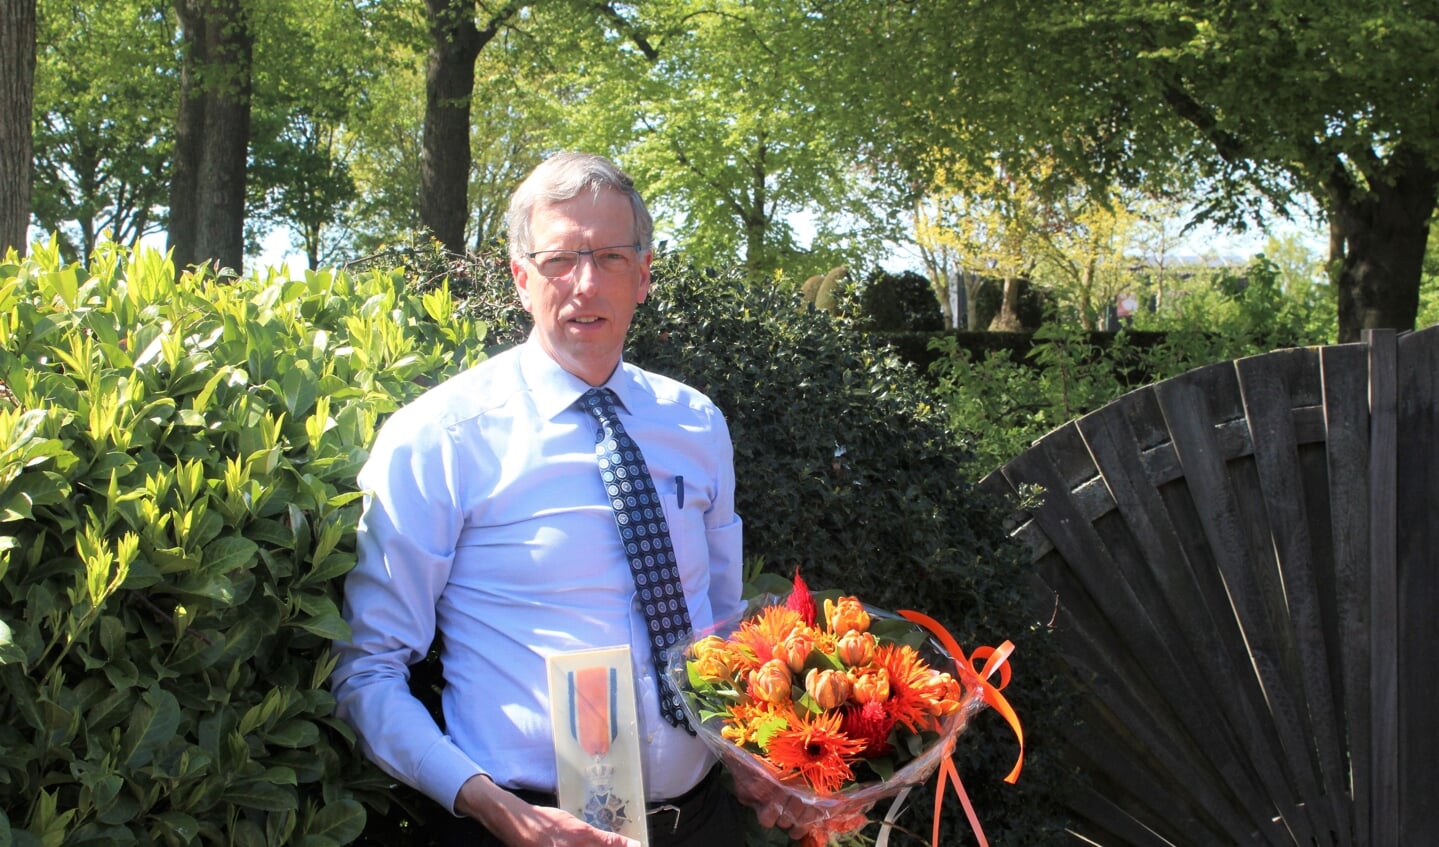 De al 28 jaar in Maartensdijk wonende Gerard Pieter Landwaart werd lid in de Orde van Oranje Nassau. Hij is sinds 2014 Secretaris van Ondernemend Wijdemeren, was secretaris van winkeliersvereniging ‘s-Gravenland; is penningsmeester geweest bij de School met de Bijbel te Maartensdijk en penningmeester van de Nederlandse Patiëntenvereniging.